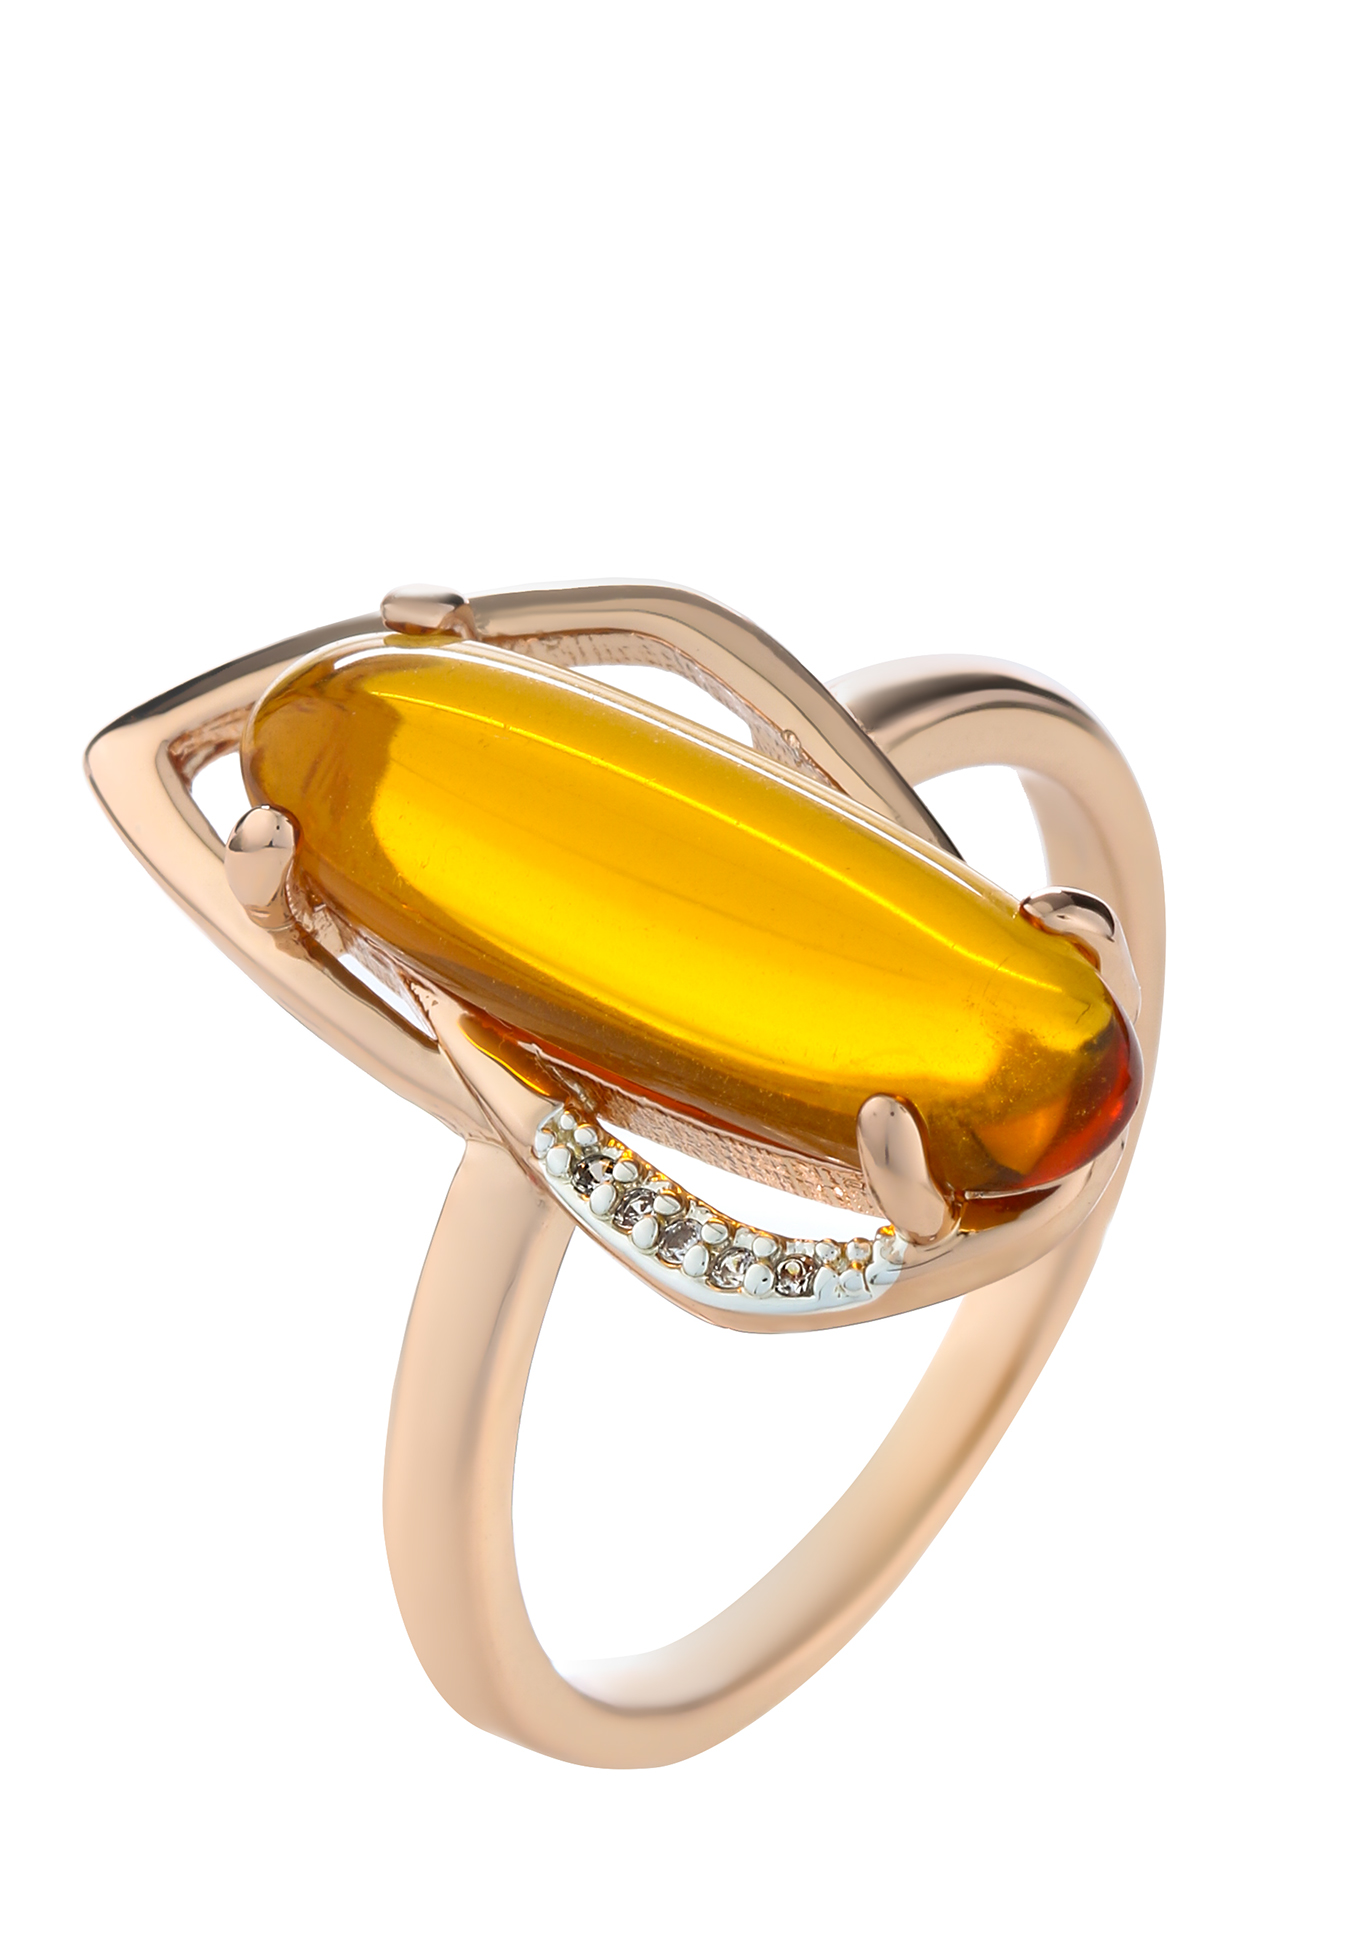 Кольцо "Янтарное сияние" Бриллианит Натюр, цвет оранжевый, размер 18 - фото 1